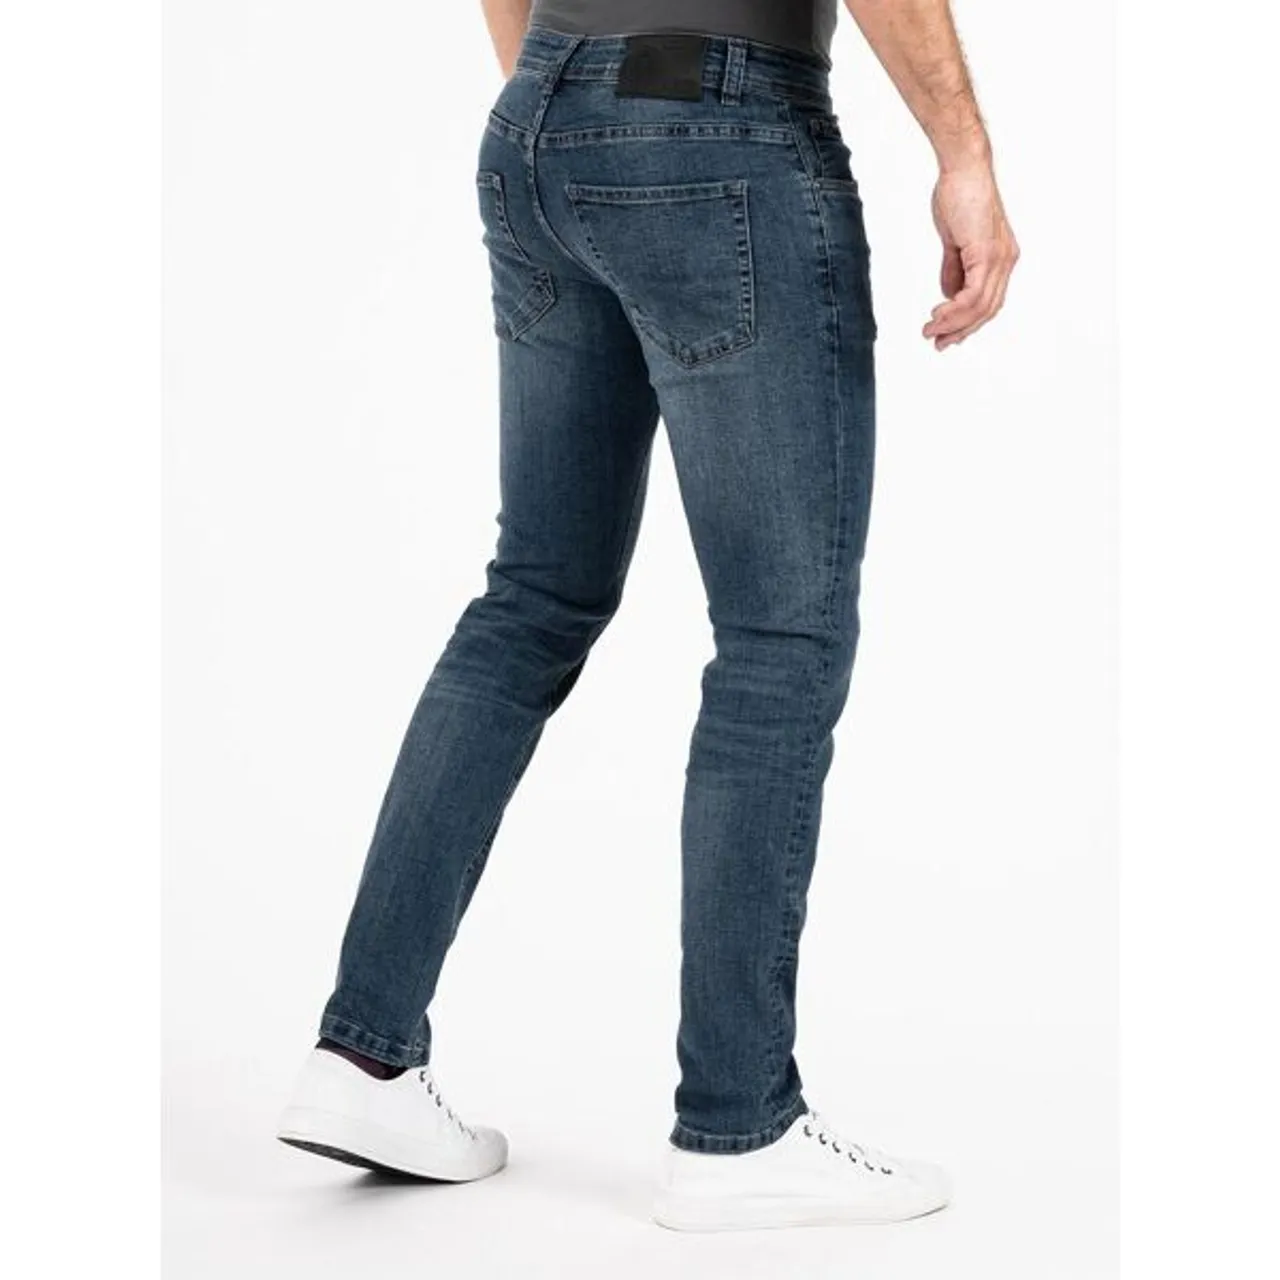 Slim-fit-Jeans PEAK TIME "Mailand" Gr. 31, Länge 32, blau Herren Jeans 5-Pocket-Jeans